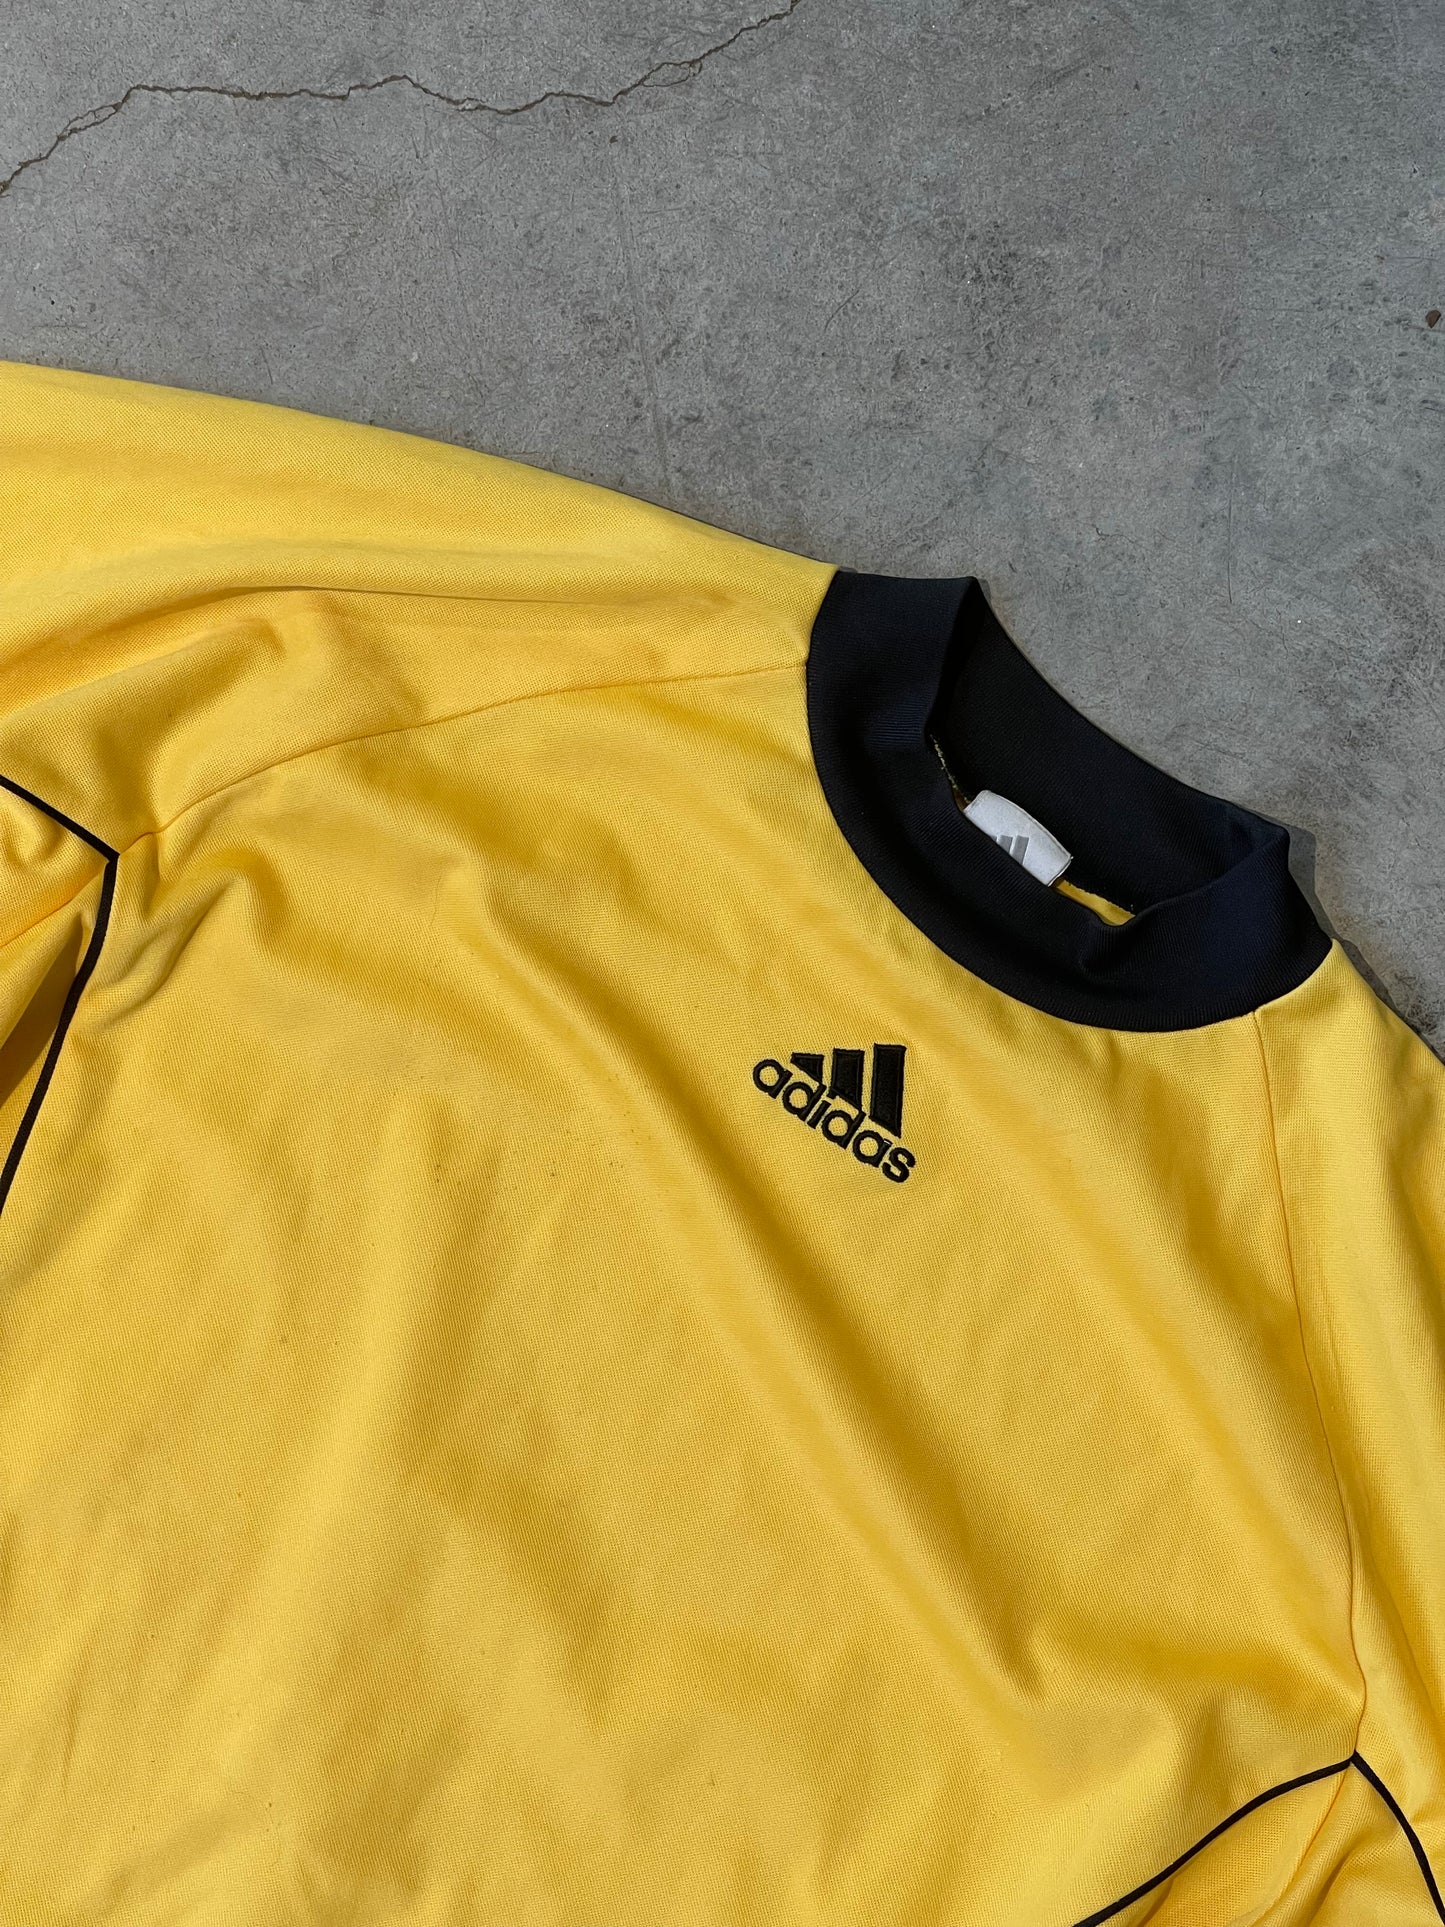 Adidas Goalie Soccer Jersey—XL